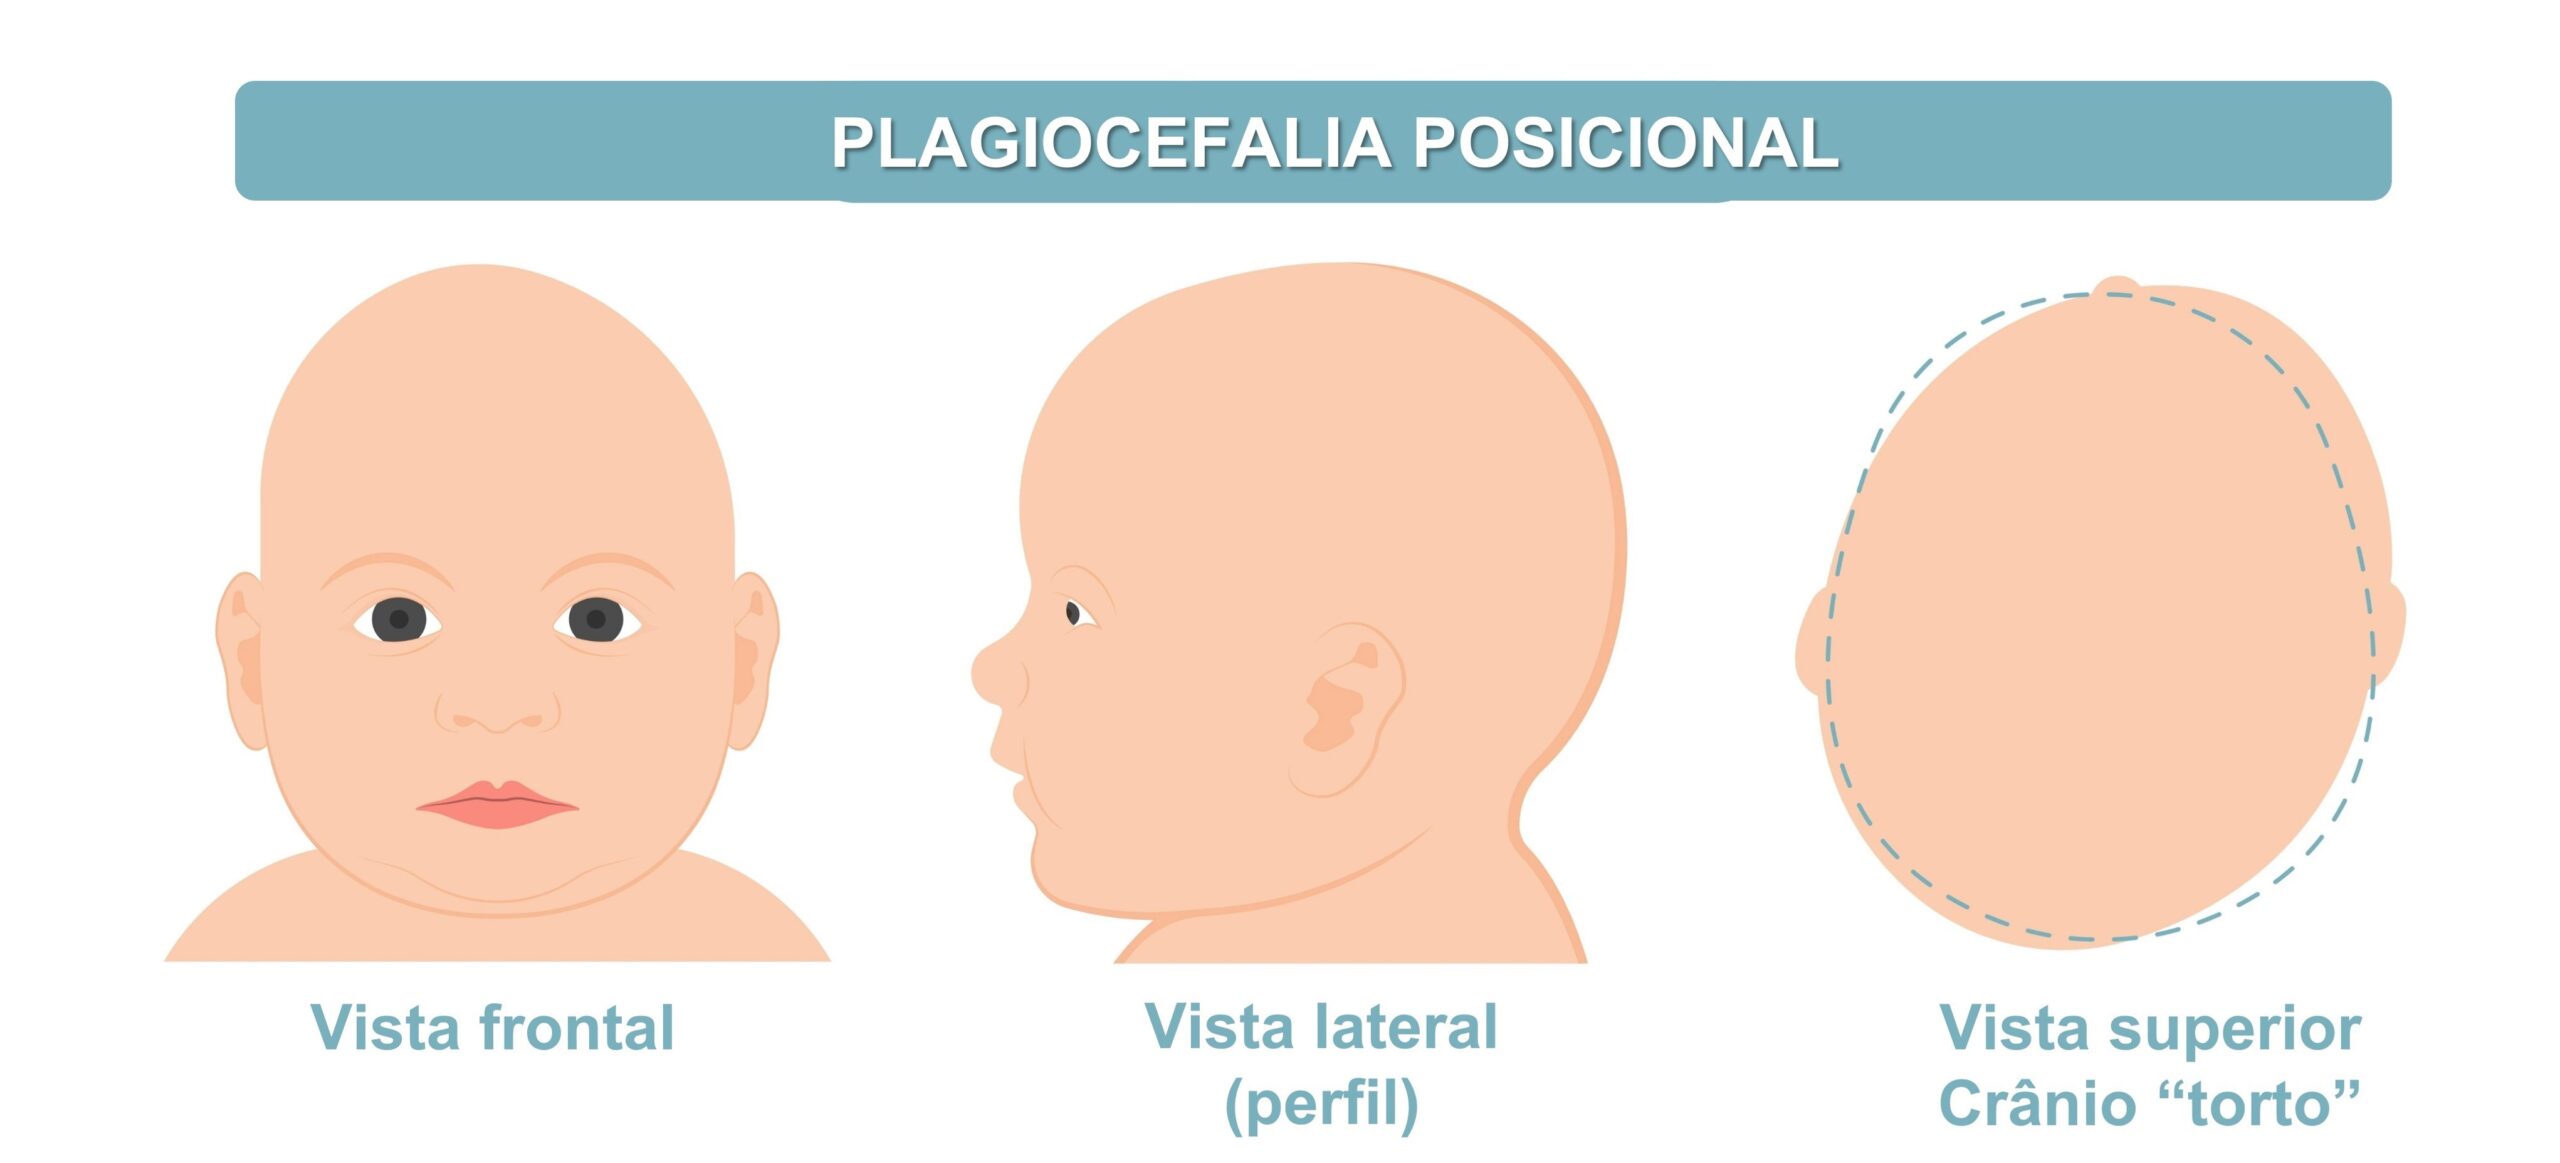 desenho da cabeça de um bebê com plagiocefalia posicional